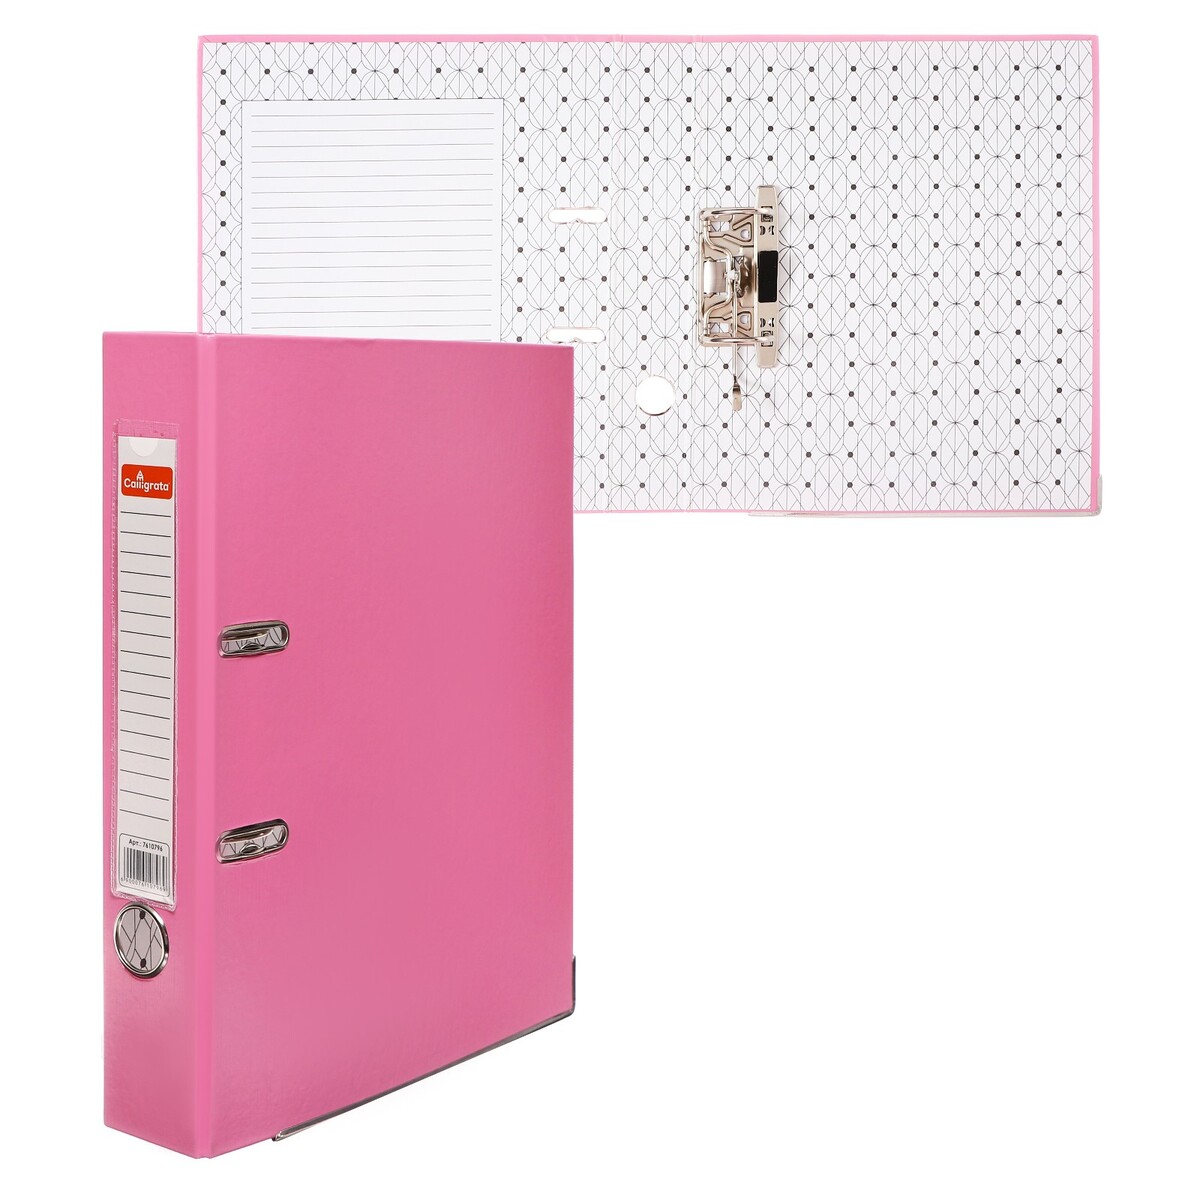 Папка-регистратор а4, 50 мм, calligrata, полипропилен, металлическая окантовка, карман на корешок, собранная, розовая